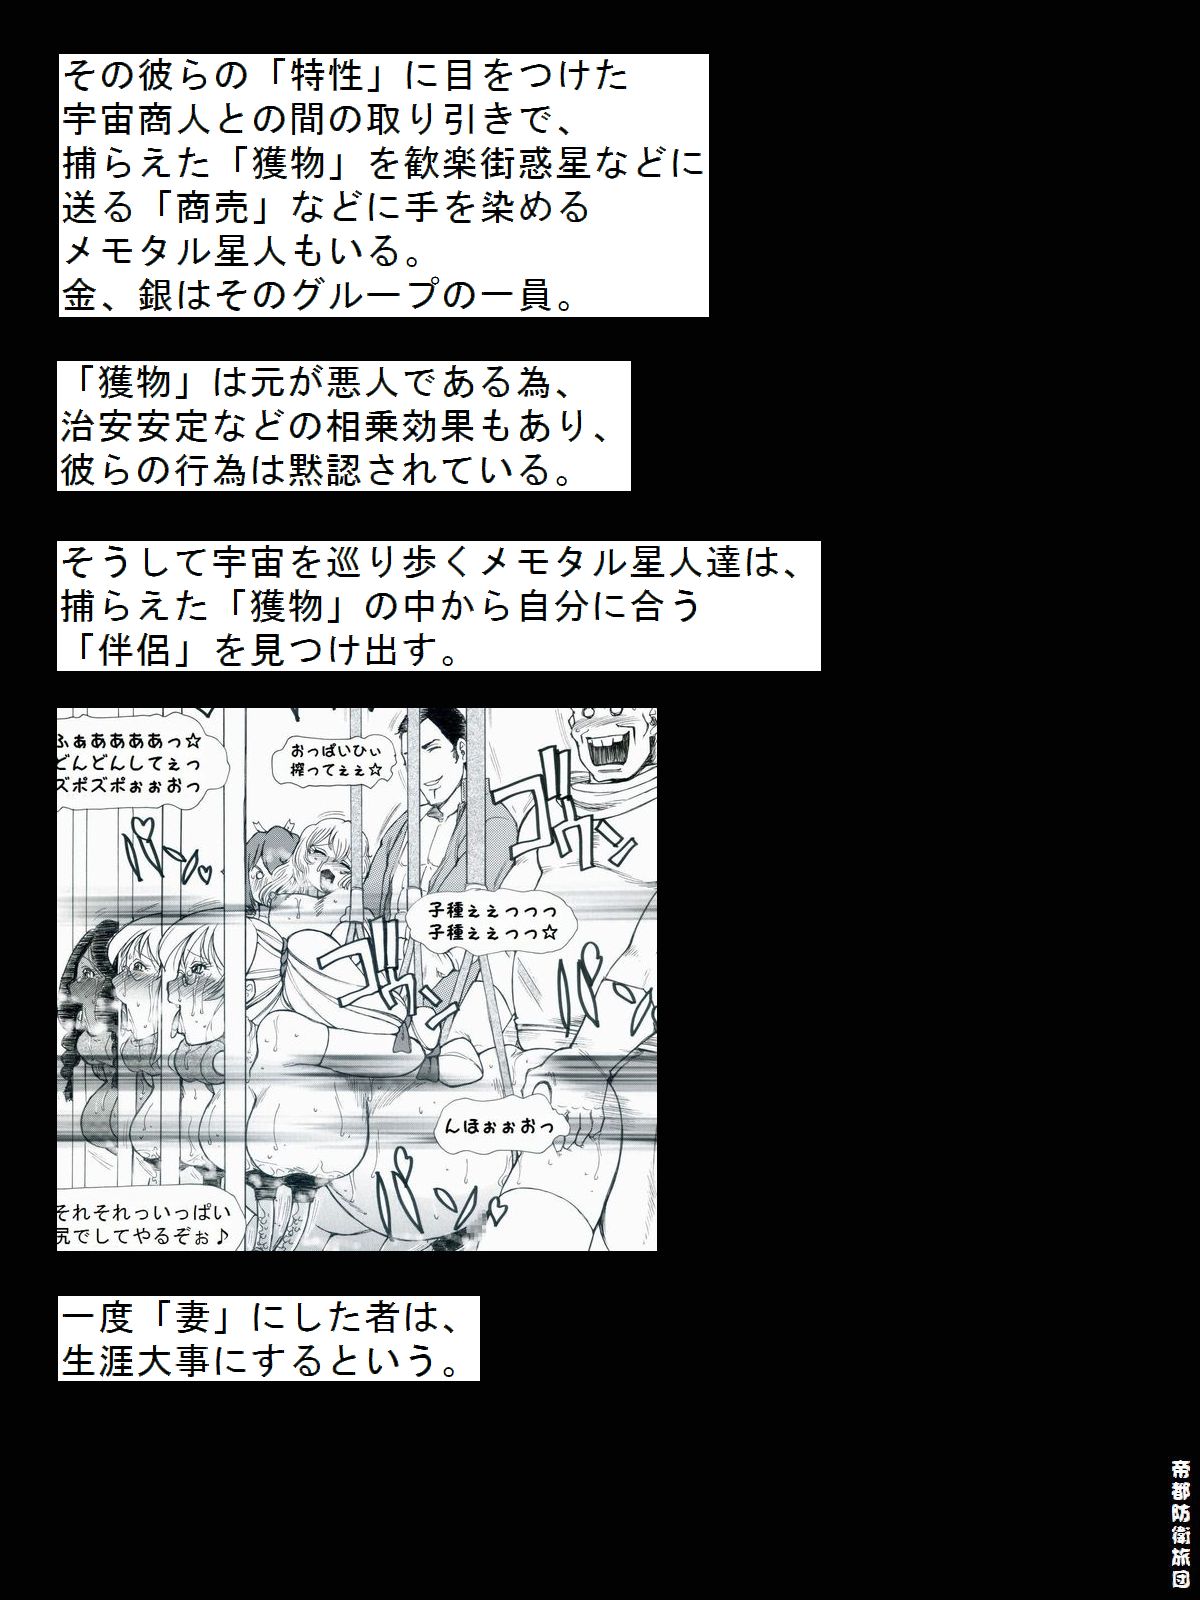 [帝都防衛旅団] RTKBOOK 9-3 「M○Xいぢり(3) 『PANPAN-MAN』」